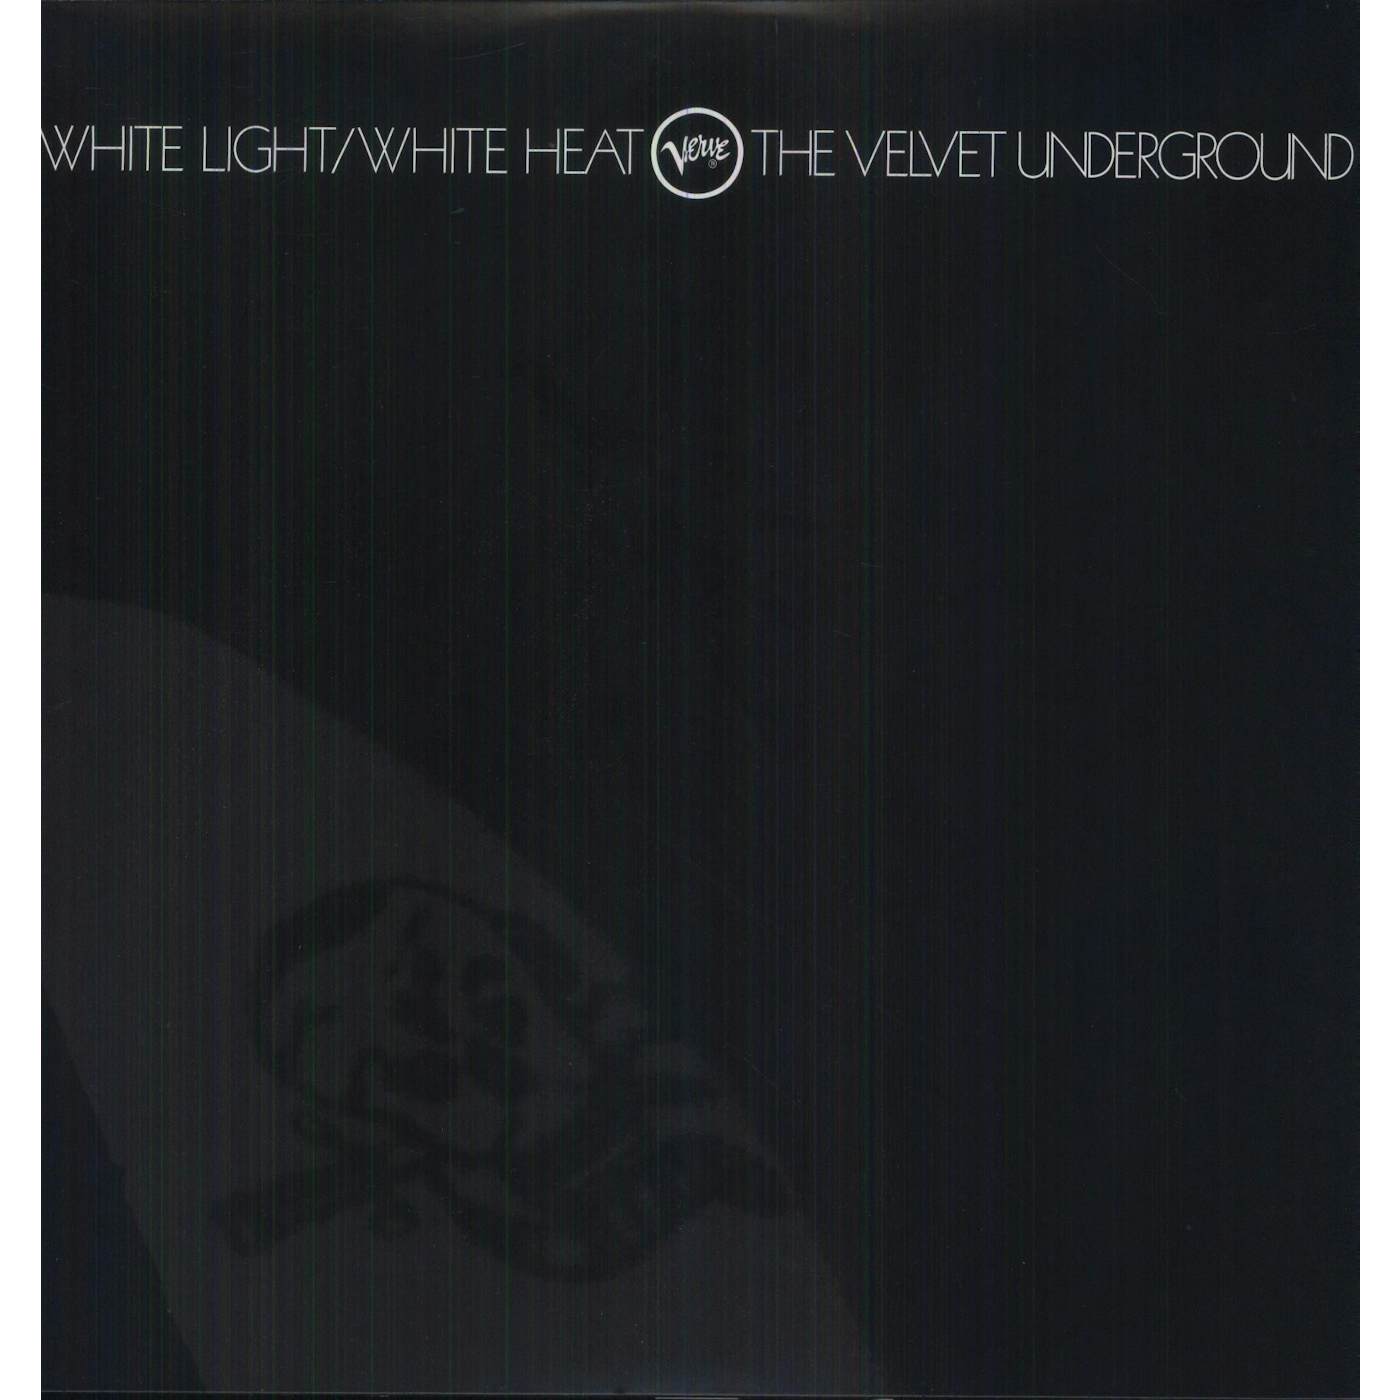 The Velvet Underground White Light/White Heat Vinyl Record